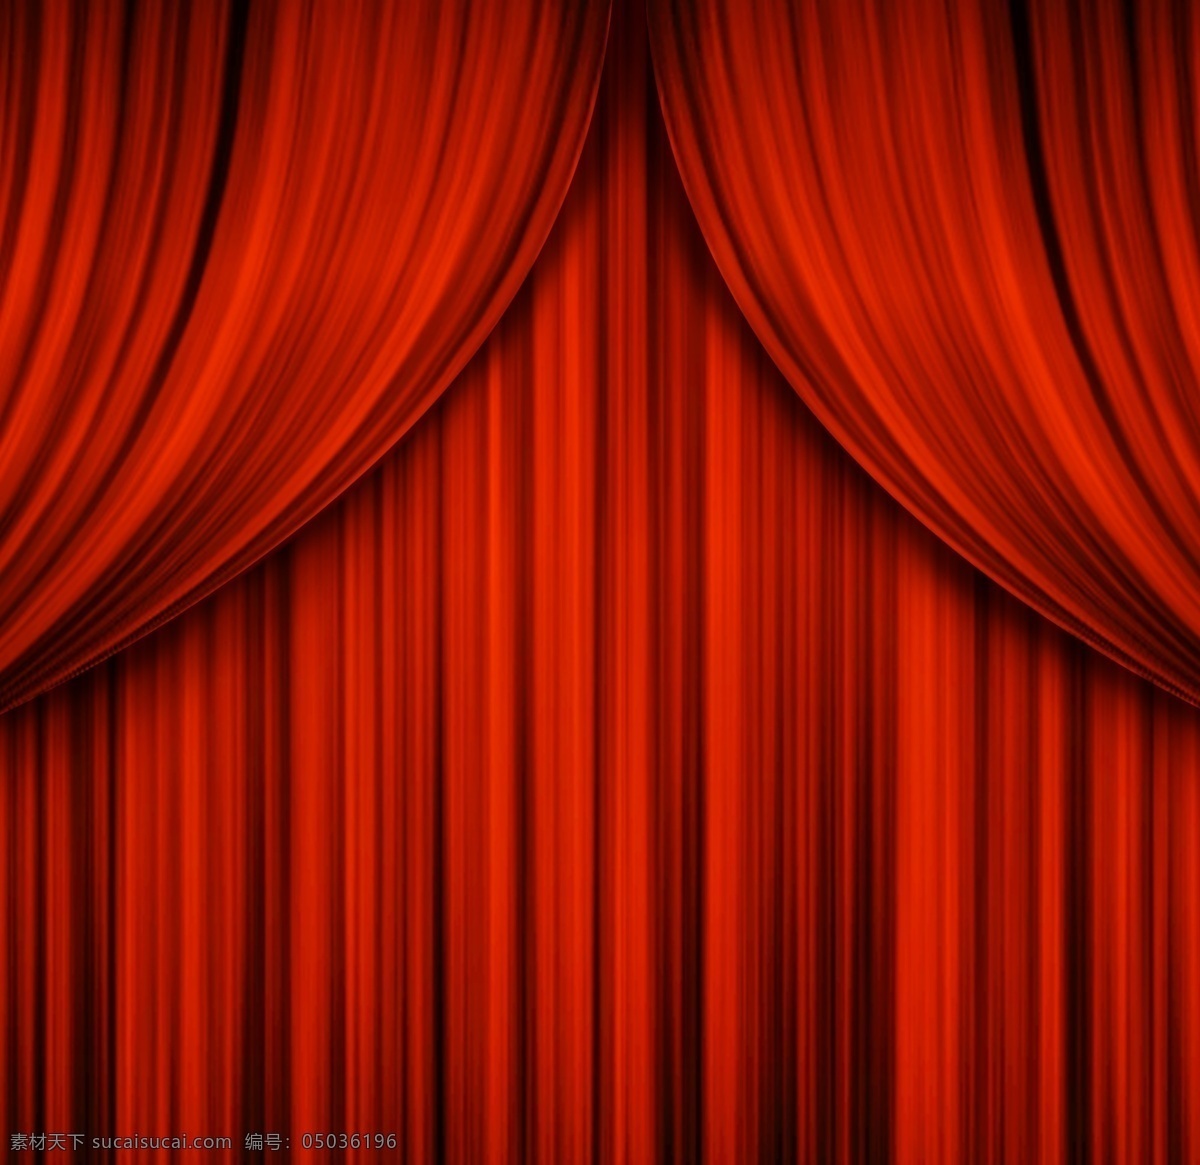 红窗帘 窗帘 布幕 帷幕 红色布 舞台布幕 底纹边框 背景底纹